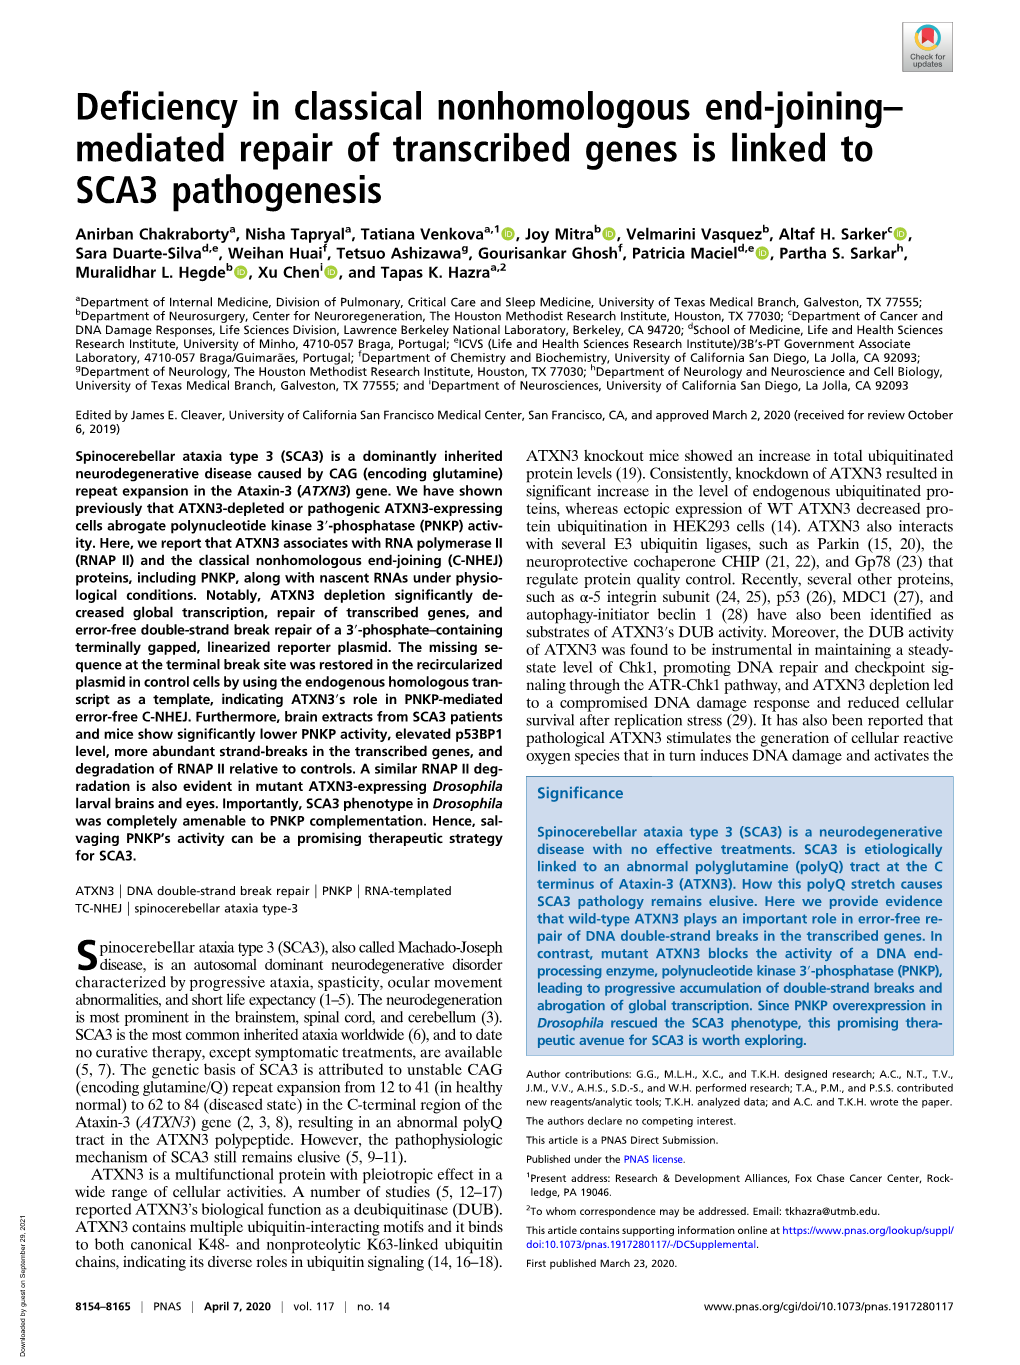 Mediated Repair of Transcribed Genes Is Linked to SCA3 Pathogenesis